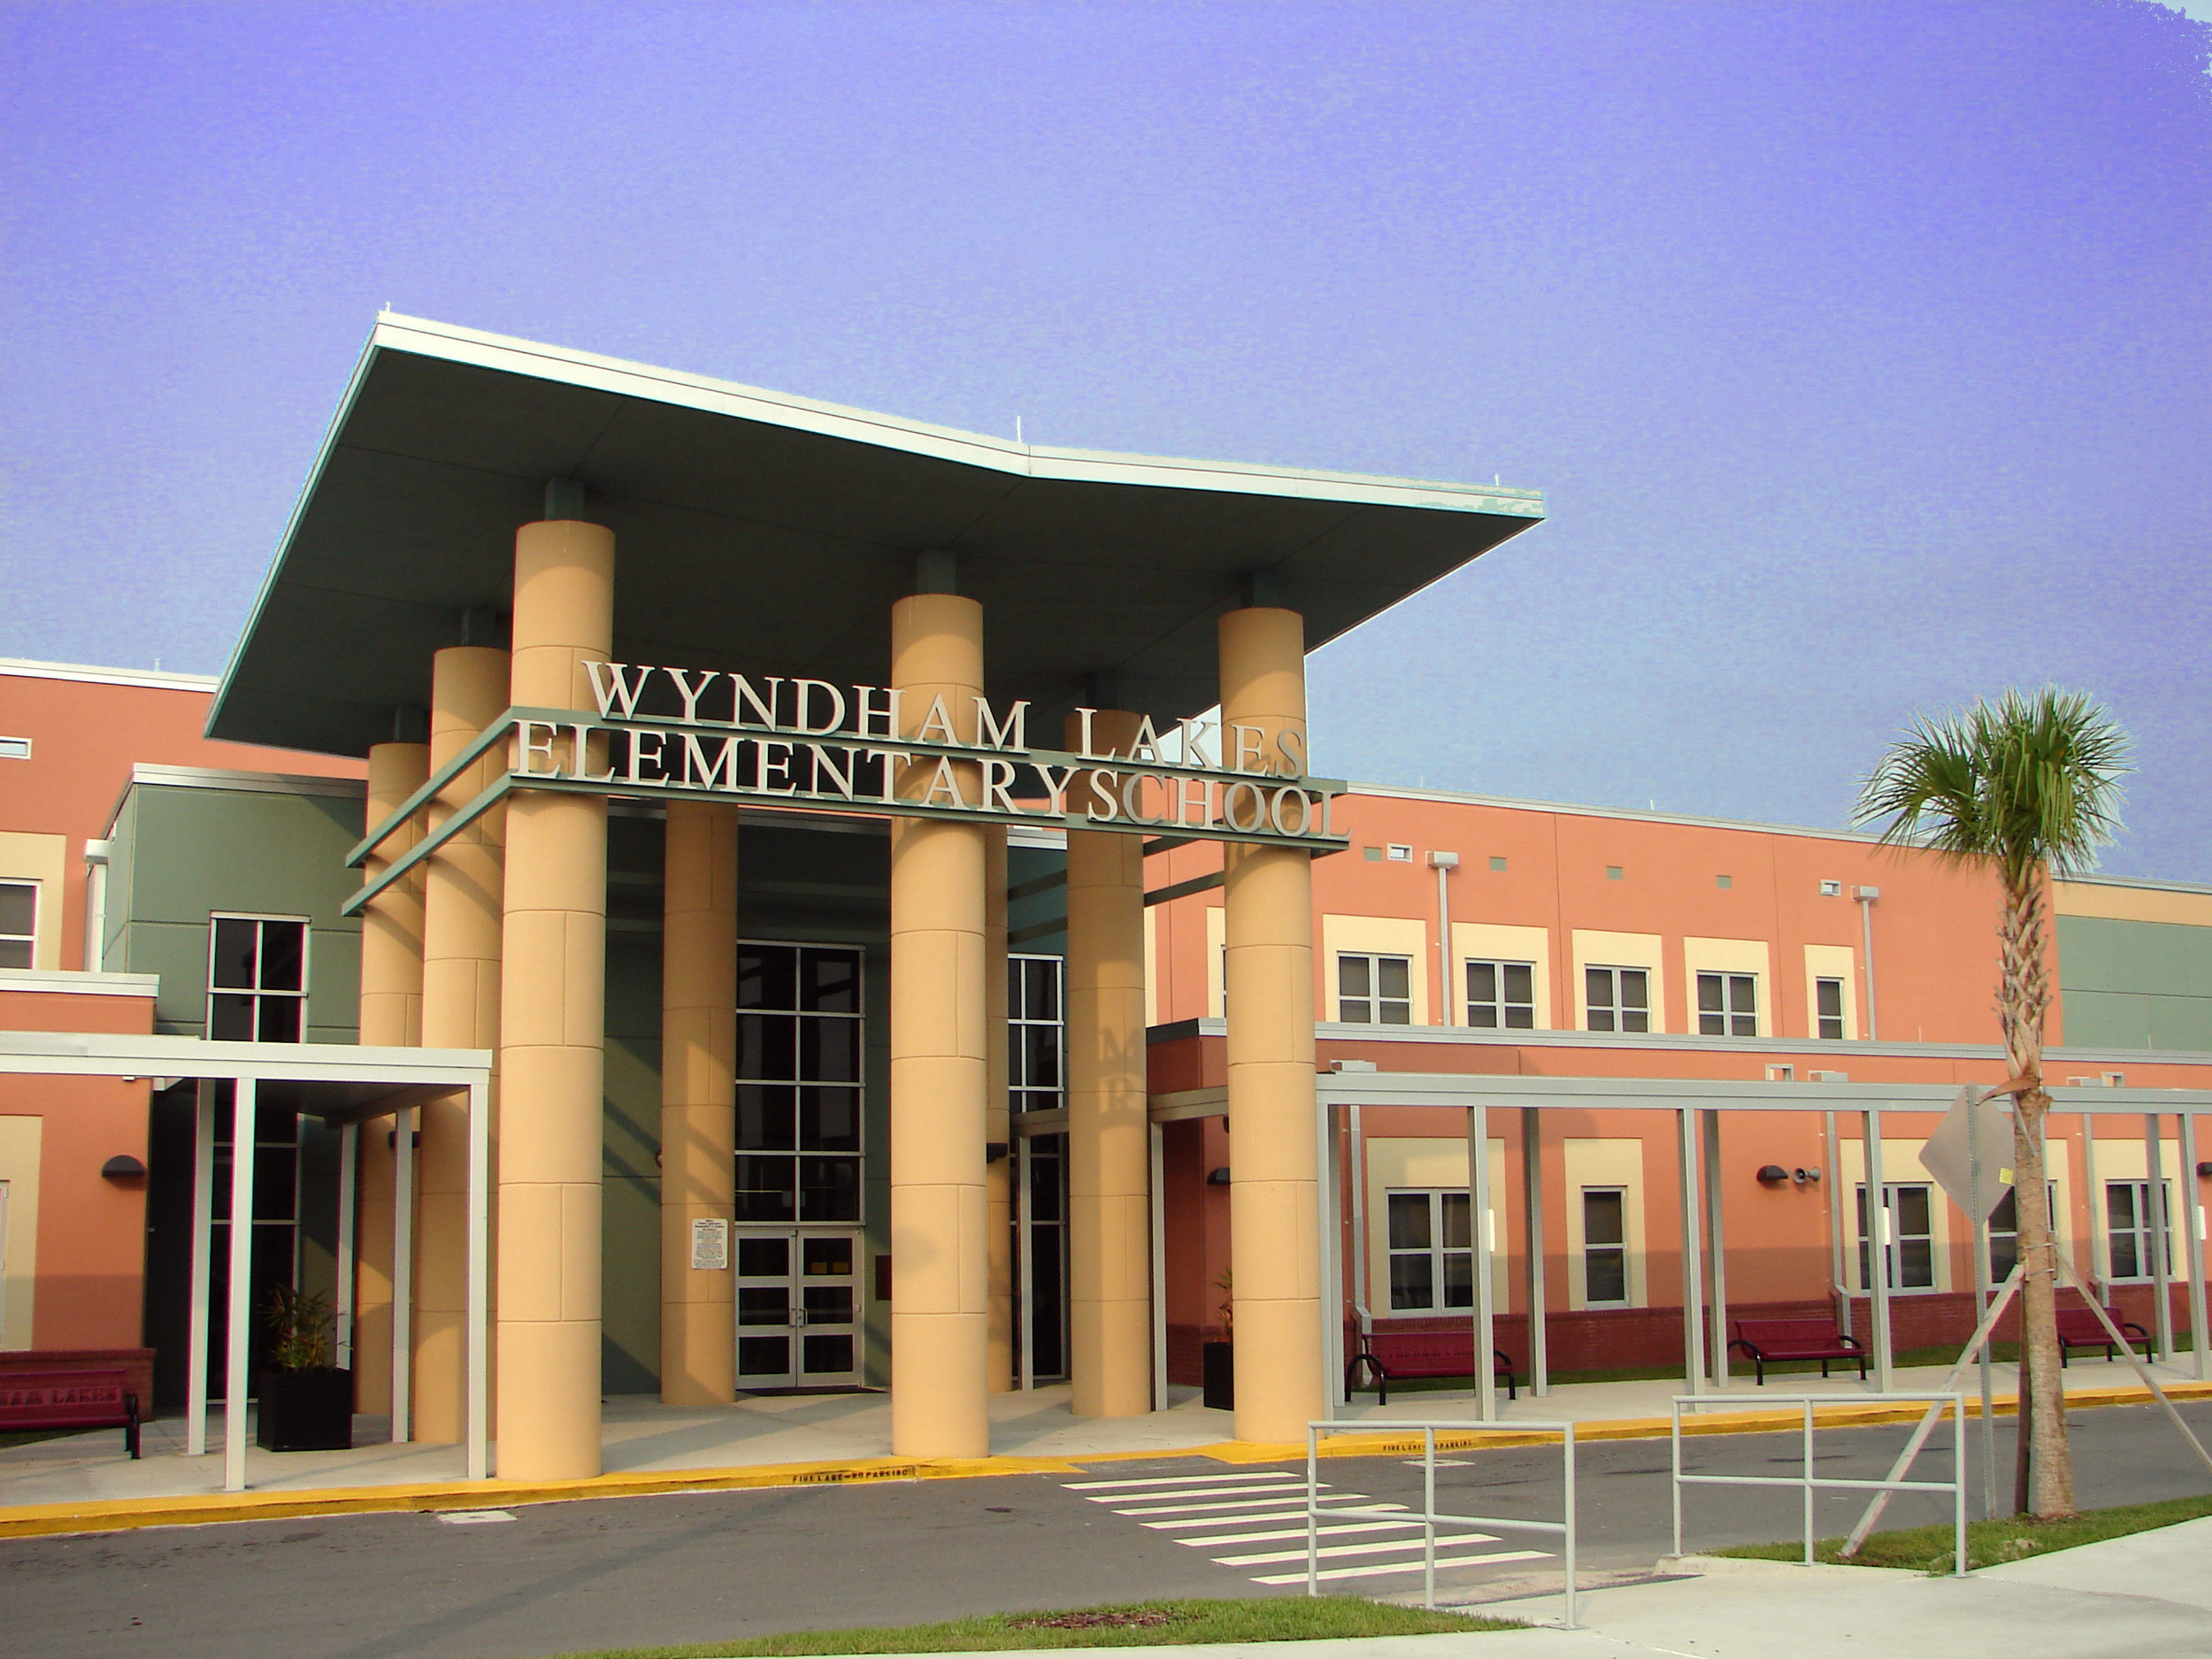 Wyndham Lakes Elementary School